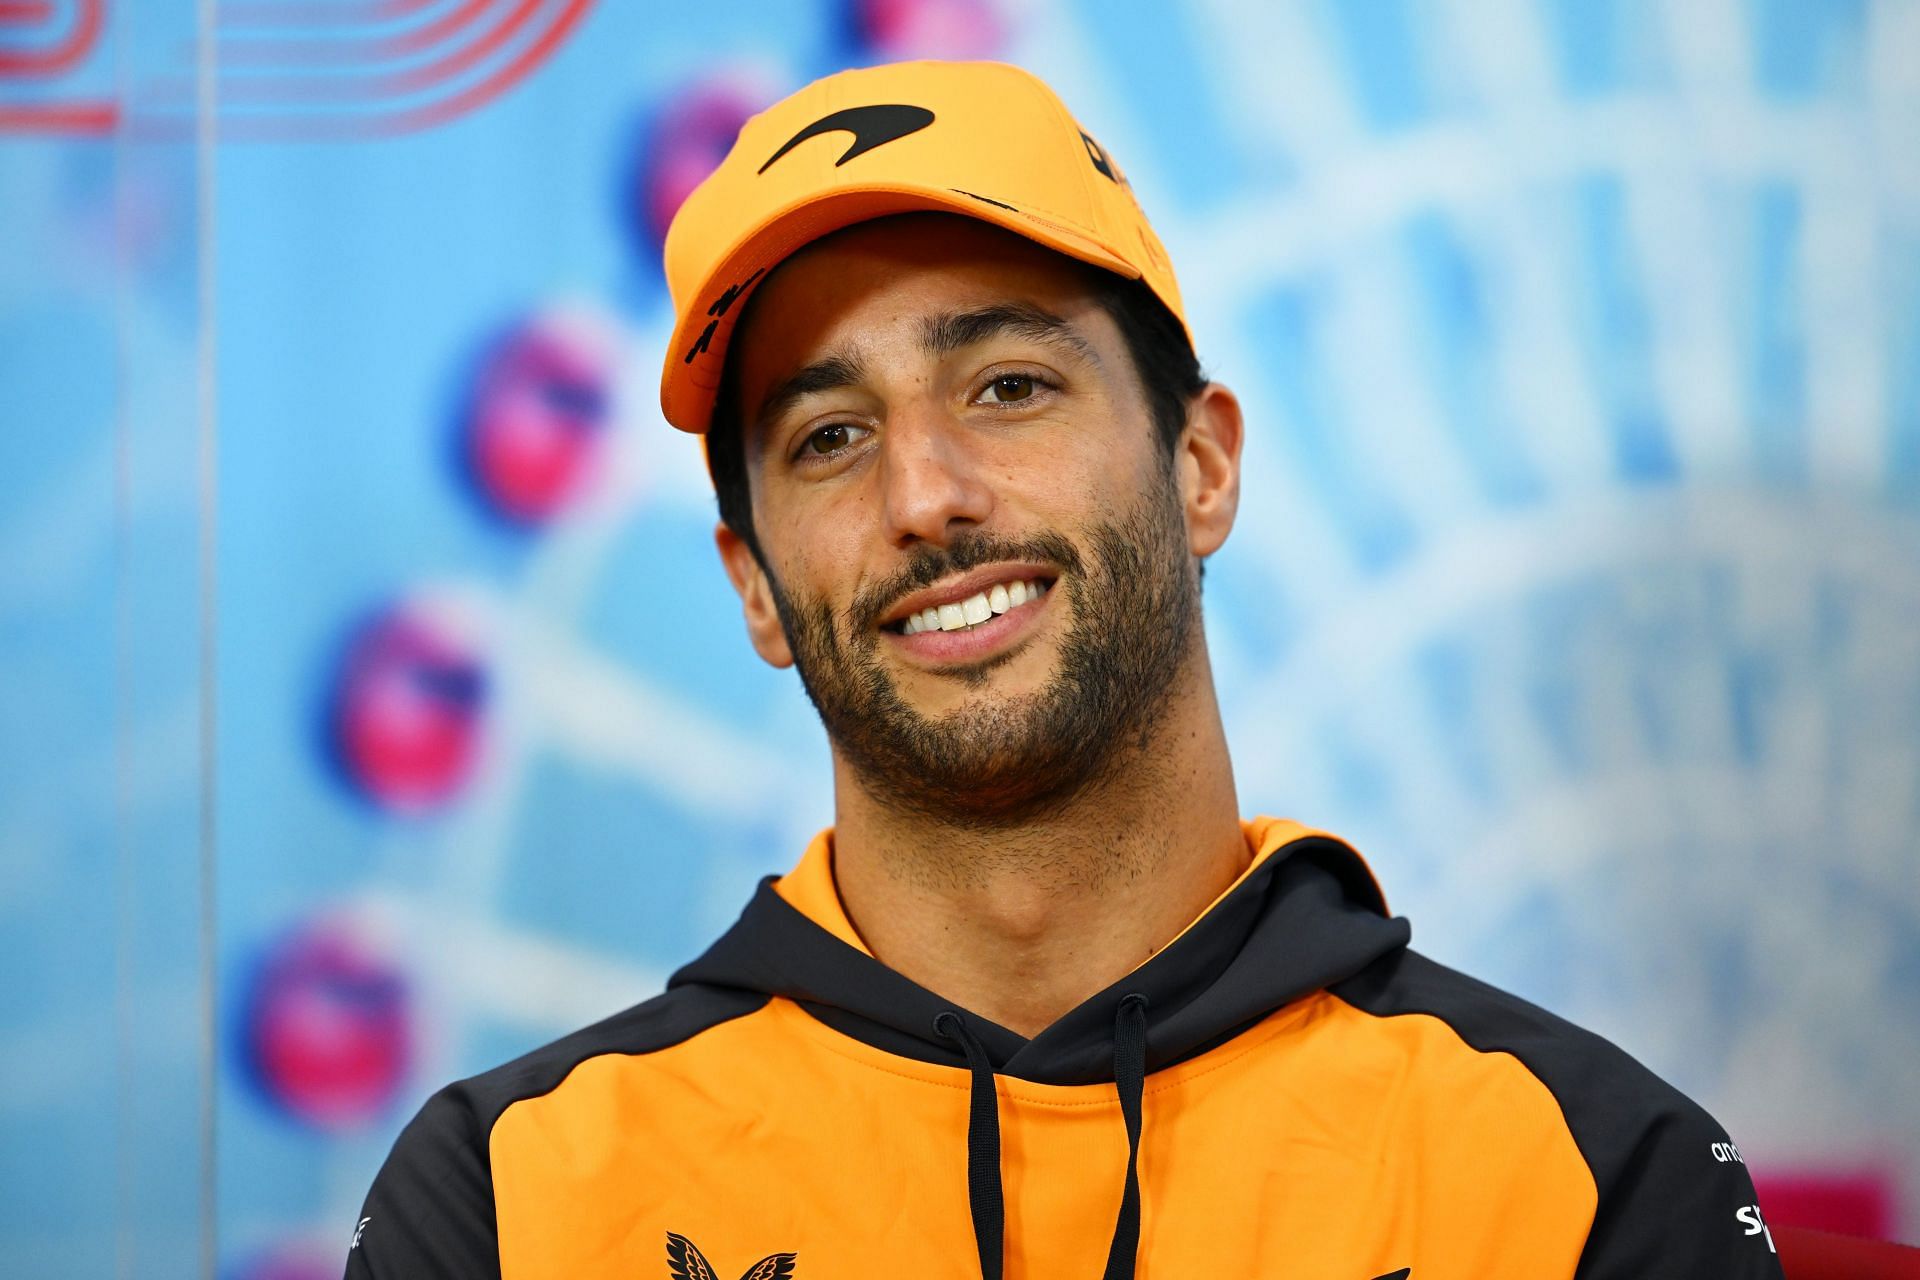 Why did Daniel Ricciardo say Austin is close to his heart?